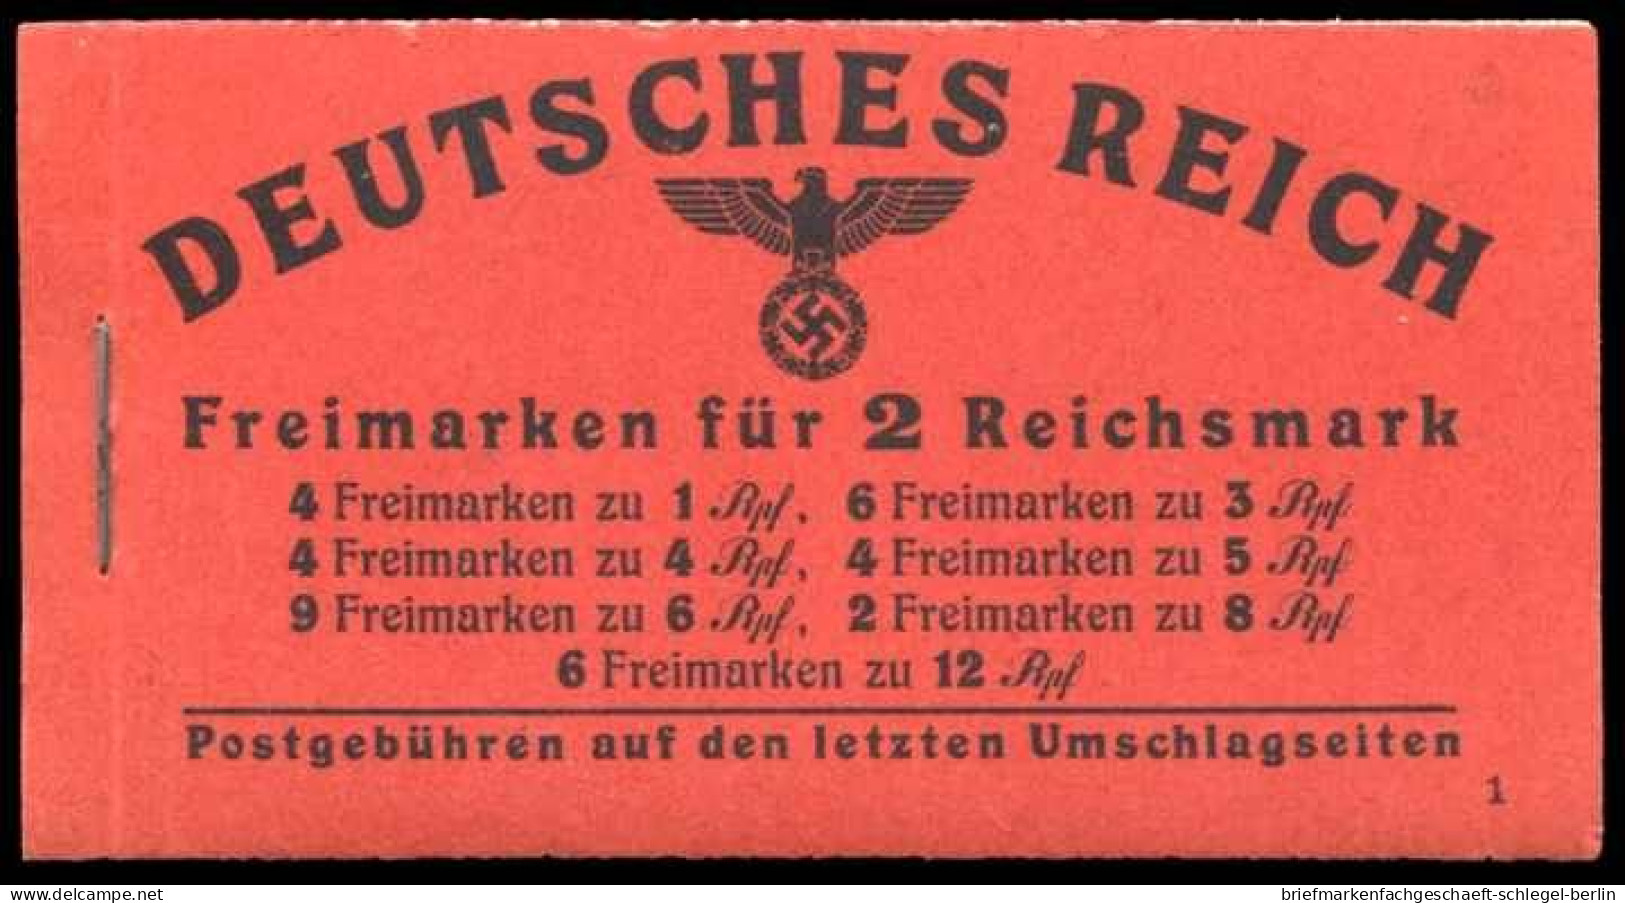 Deutsches Reich, 1941, MH 48.3, Postfrisch - Markenheftchen